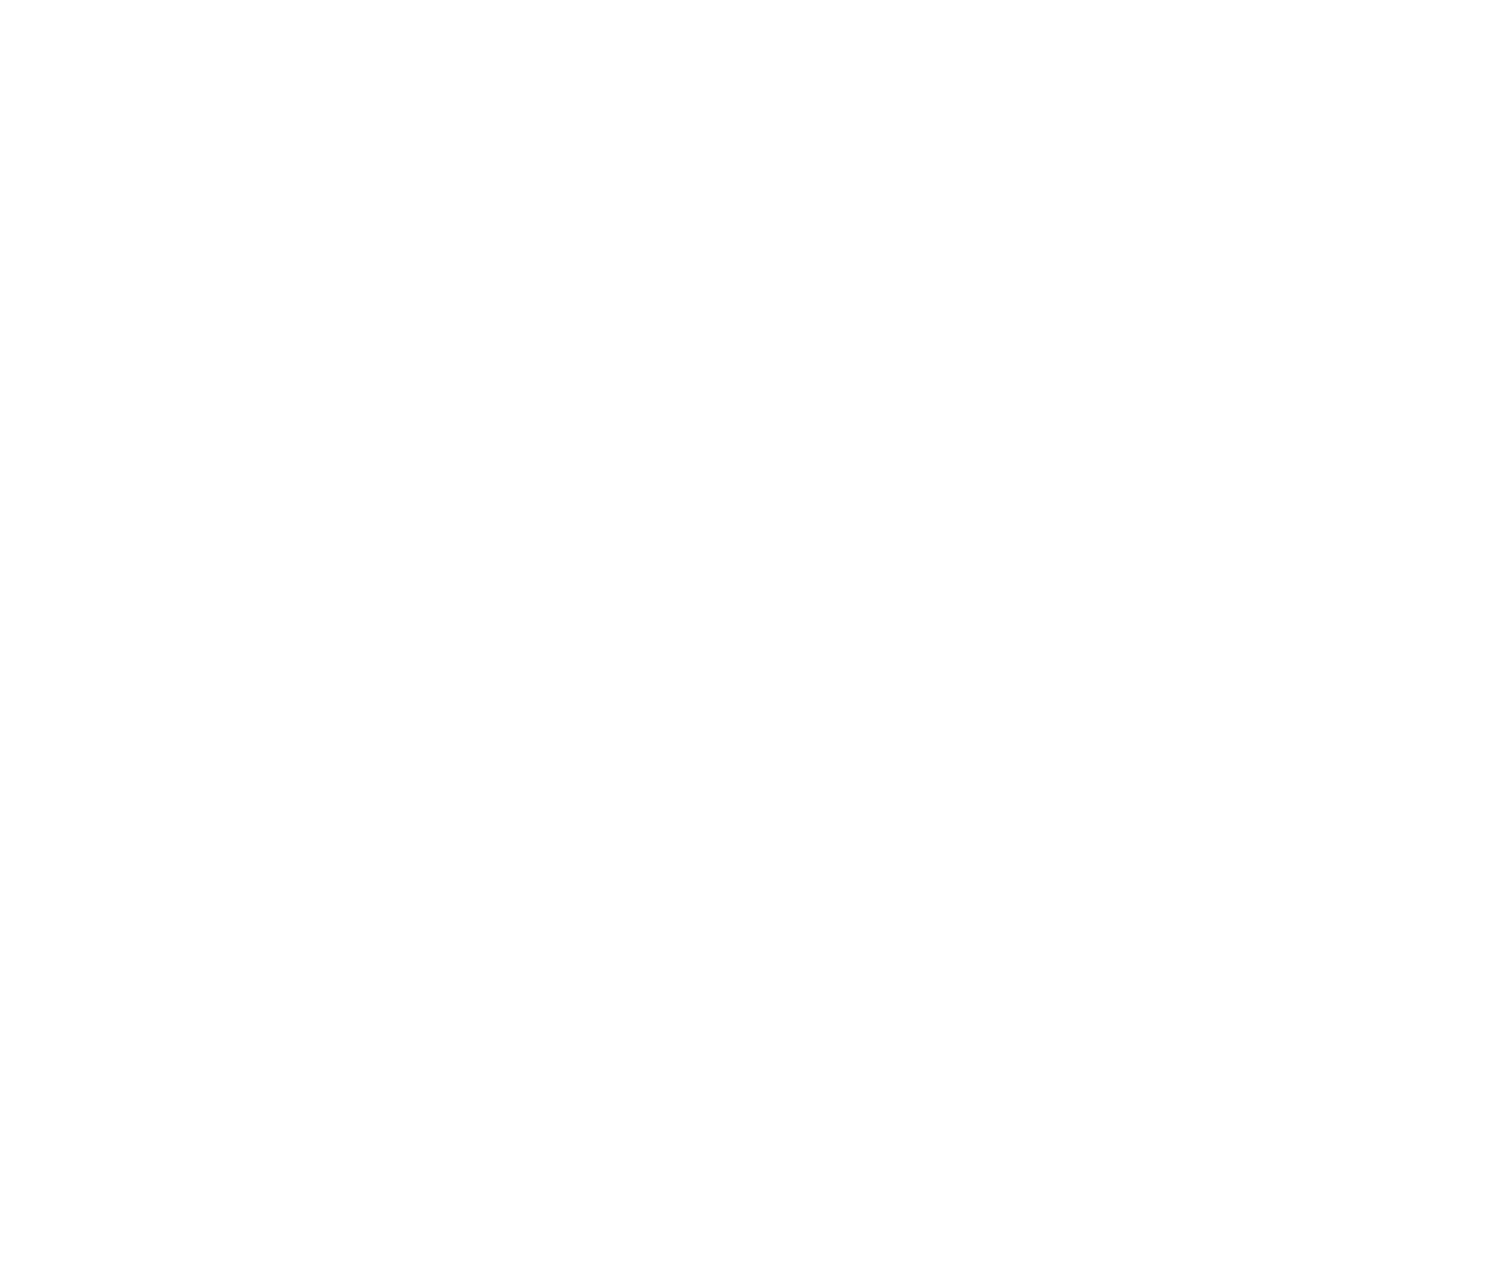 1910 FRAME WORKS